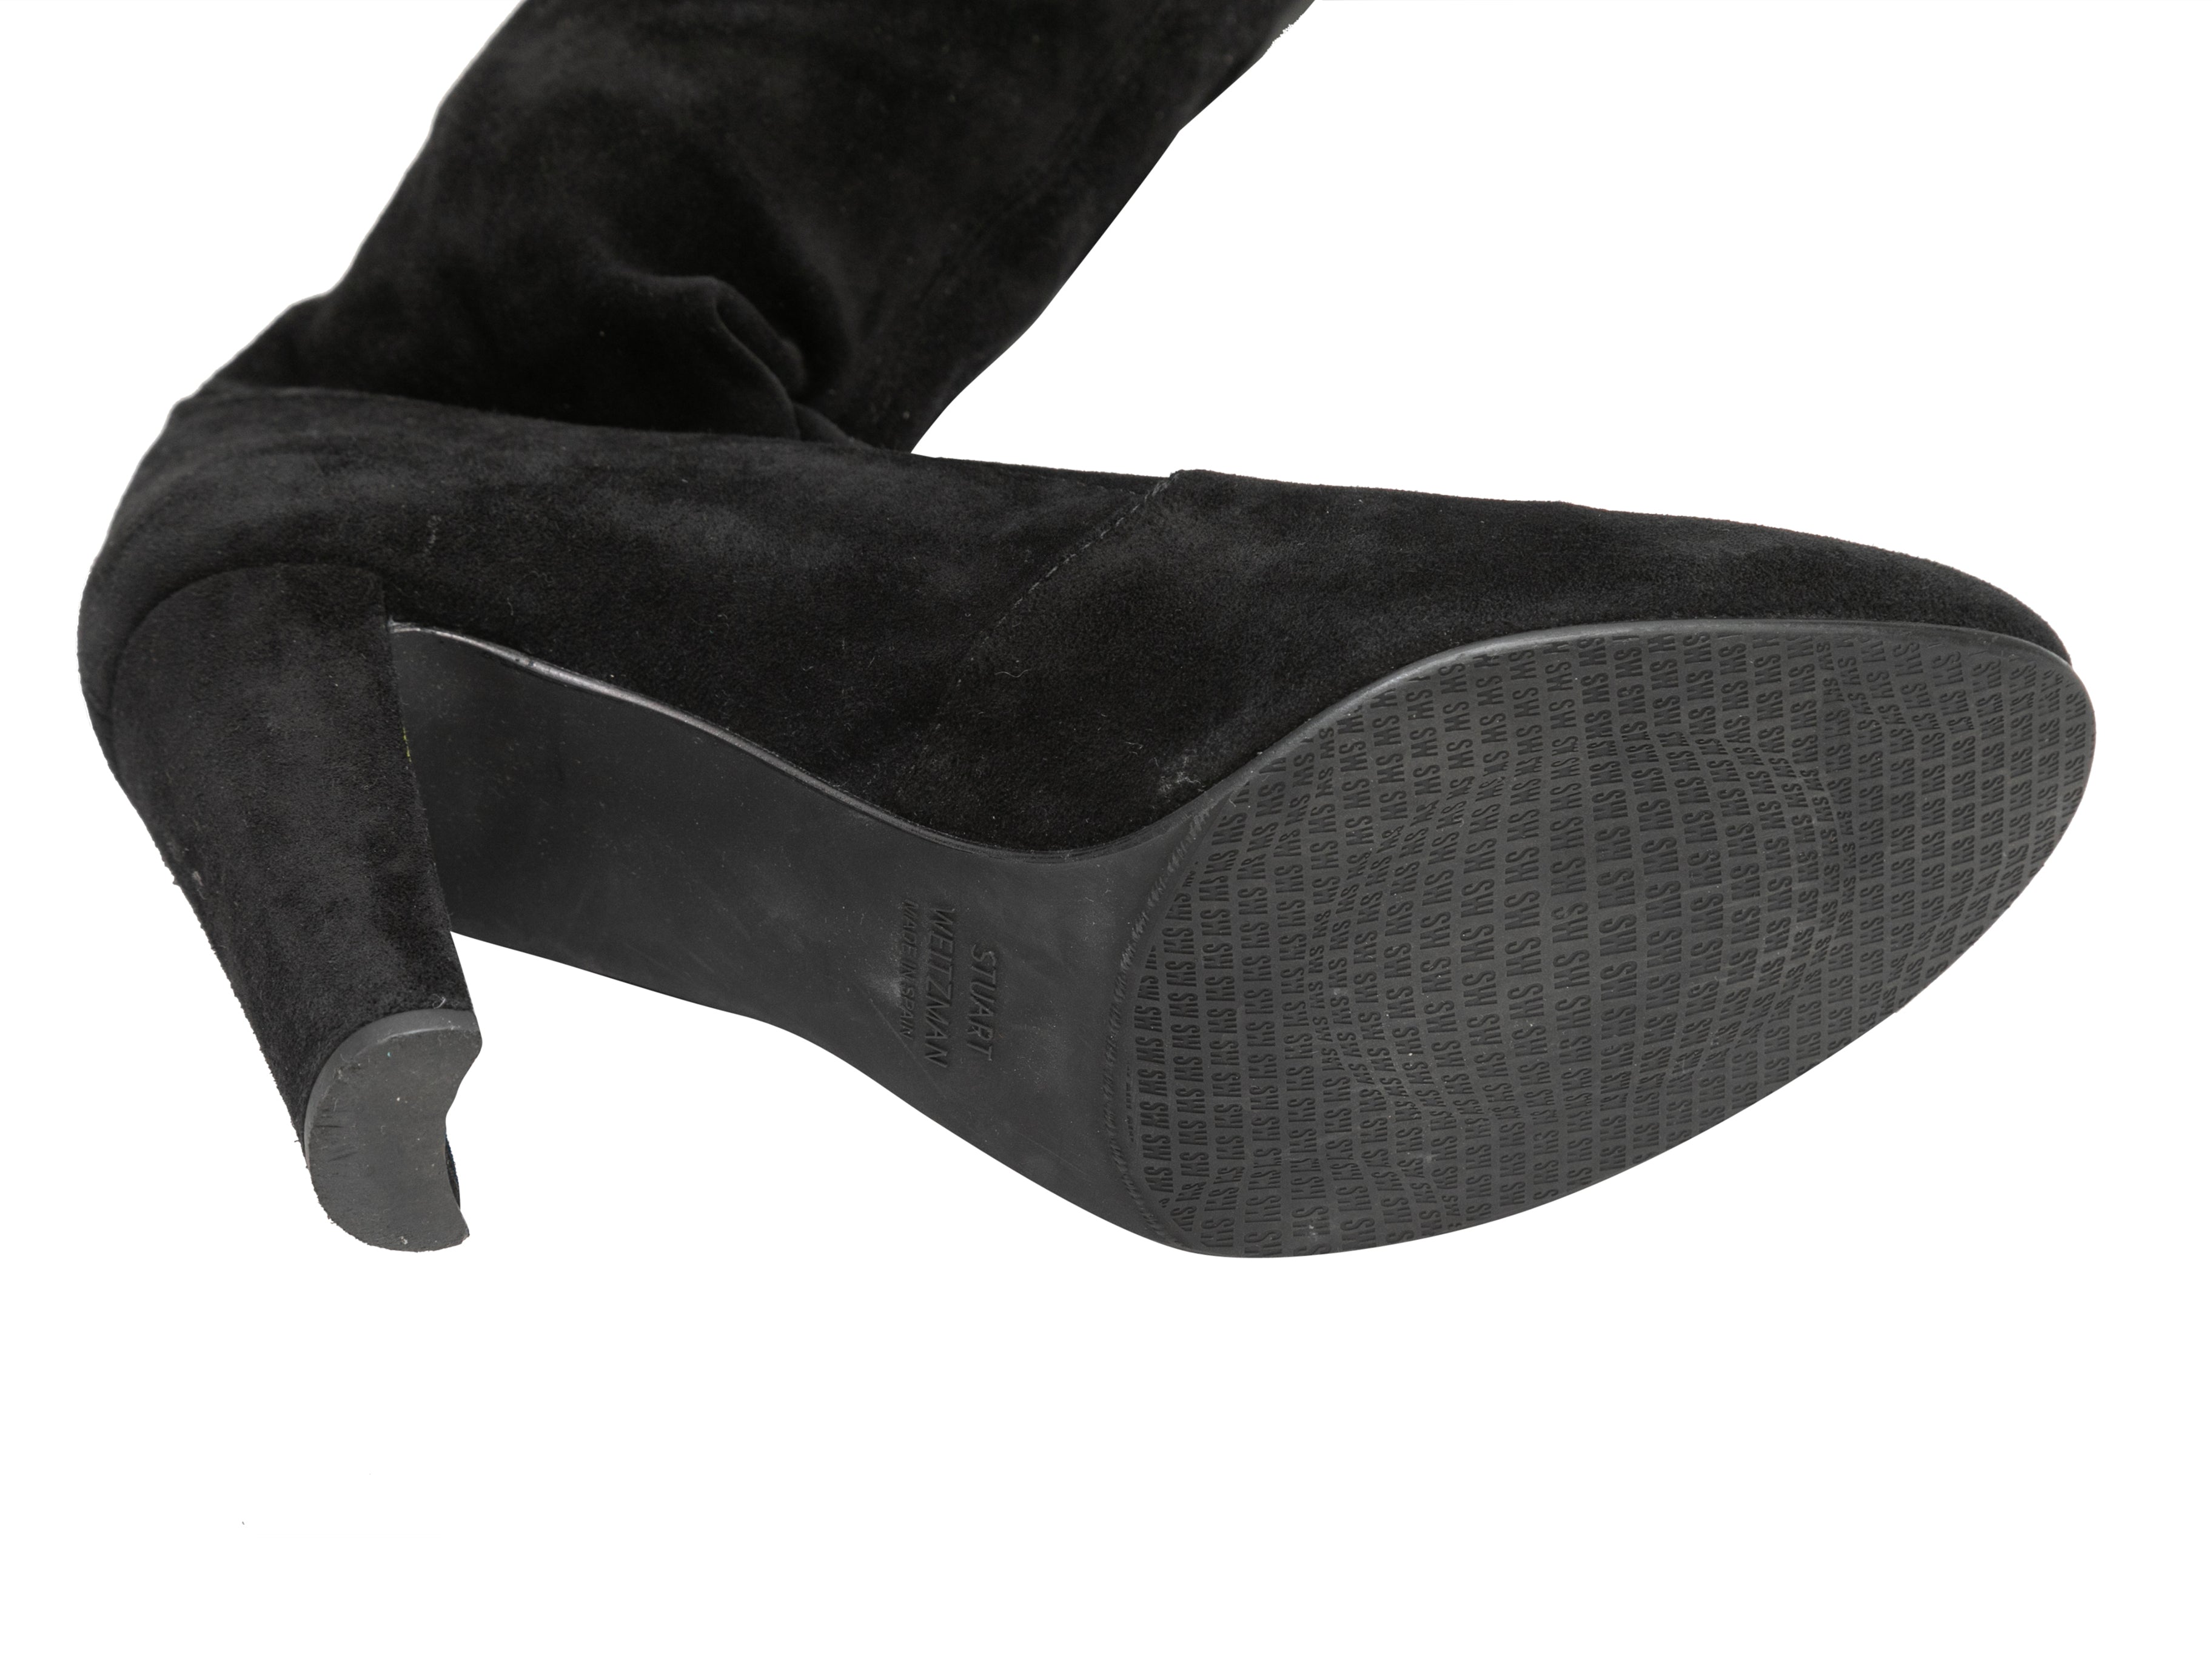 Louis Vuitton's Blocked Heel Sock Boots (Above Knee) - BlackMiss